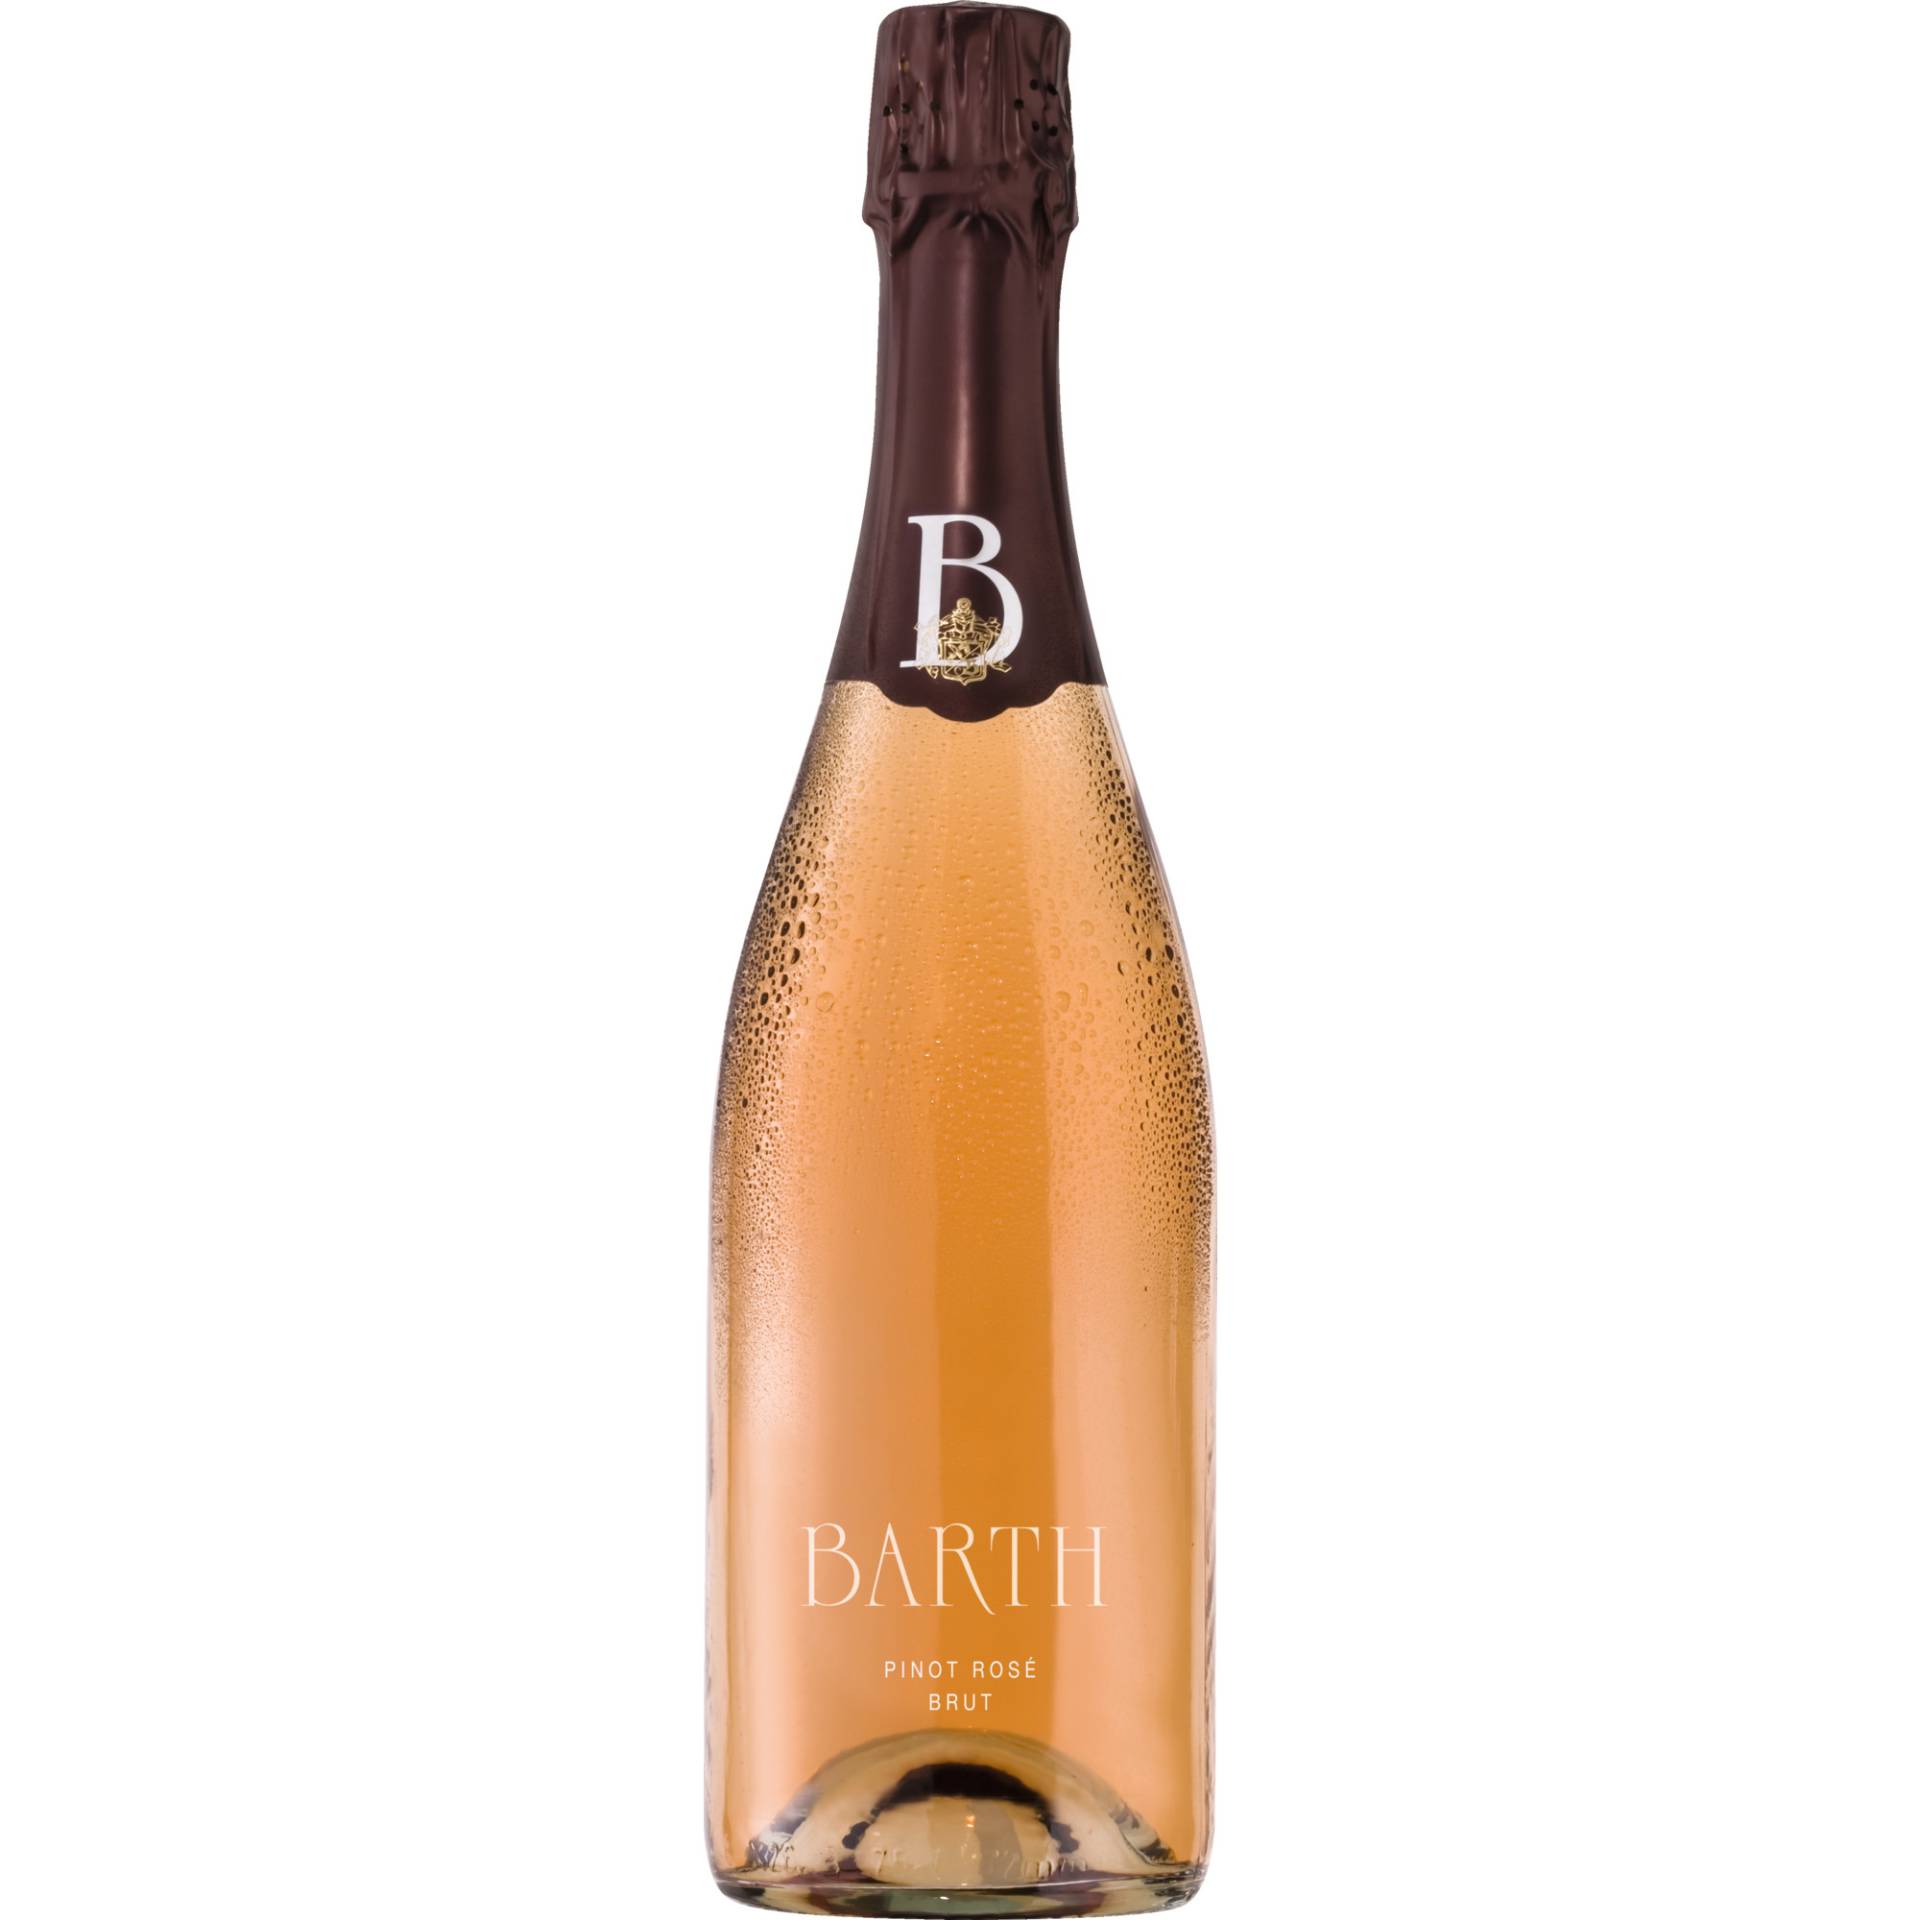 Barth Pinot Rosé Sekt, Brut, Deutscher Sekt, Deutscher Sekt, Schaumwein von Wein-und Sektgut Barth, D - 65347 Hattenheim